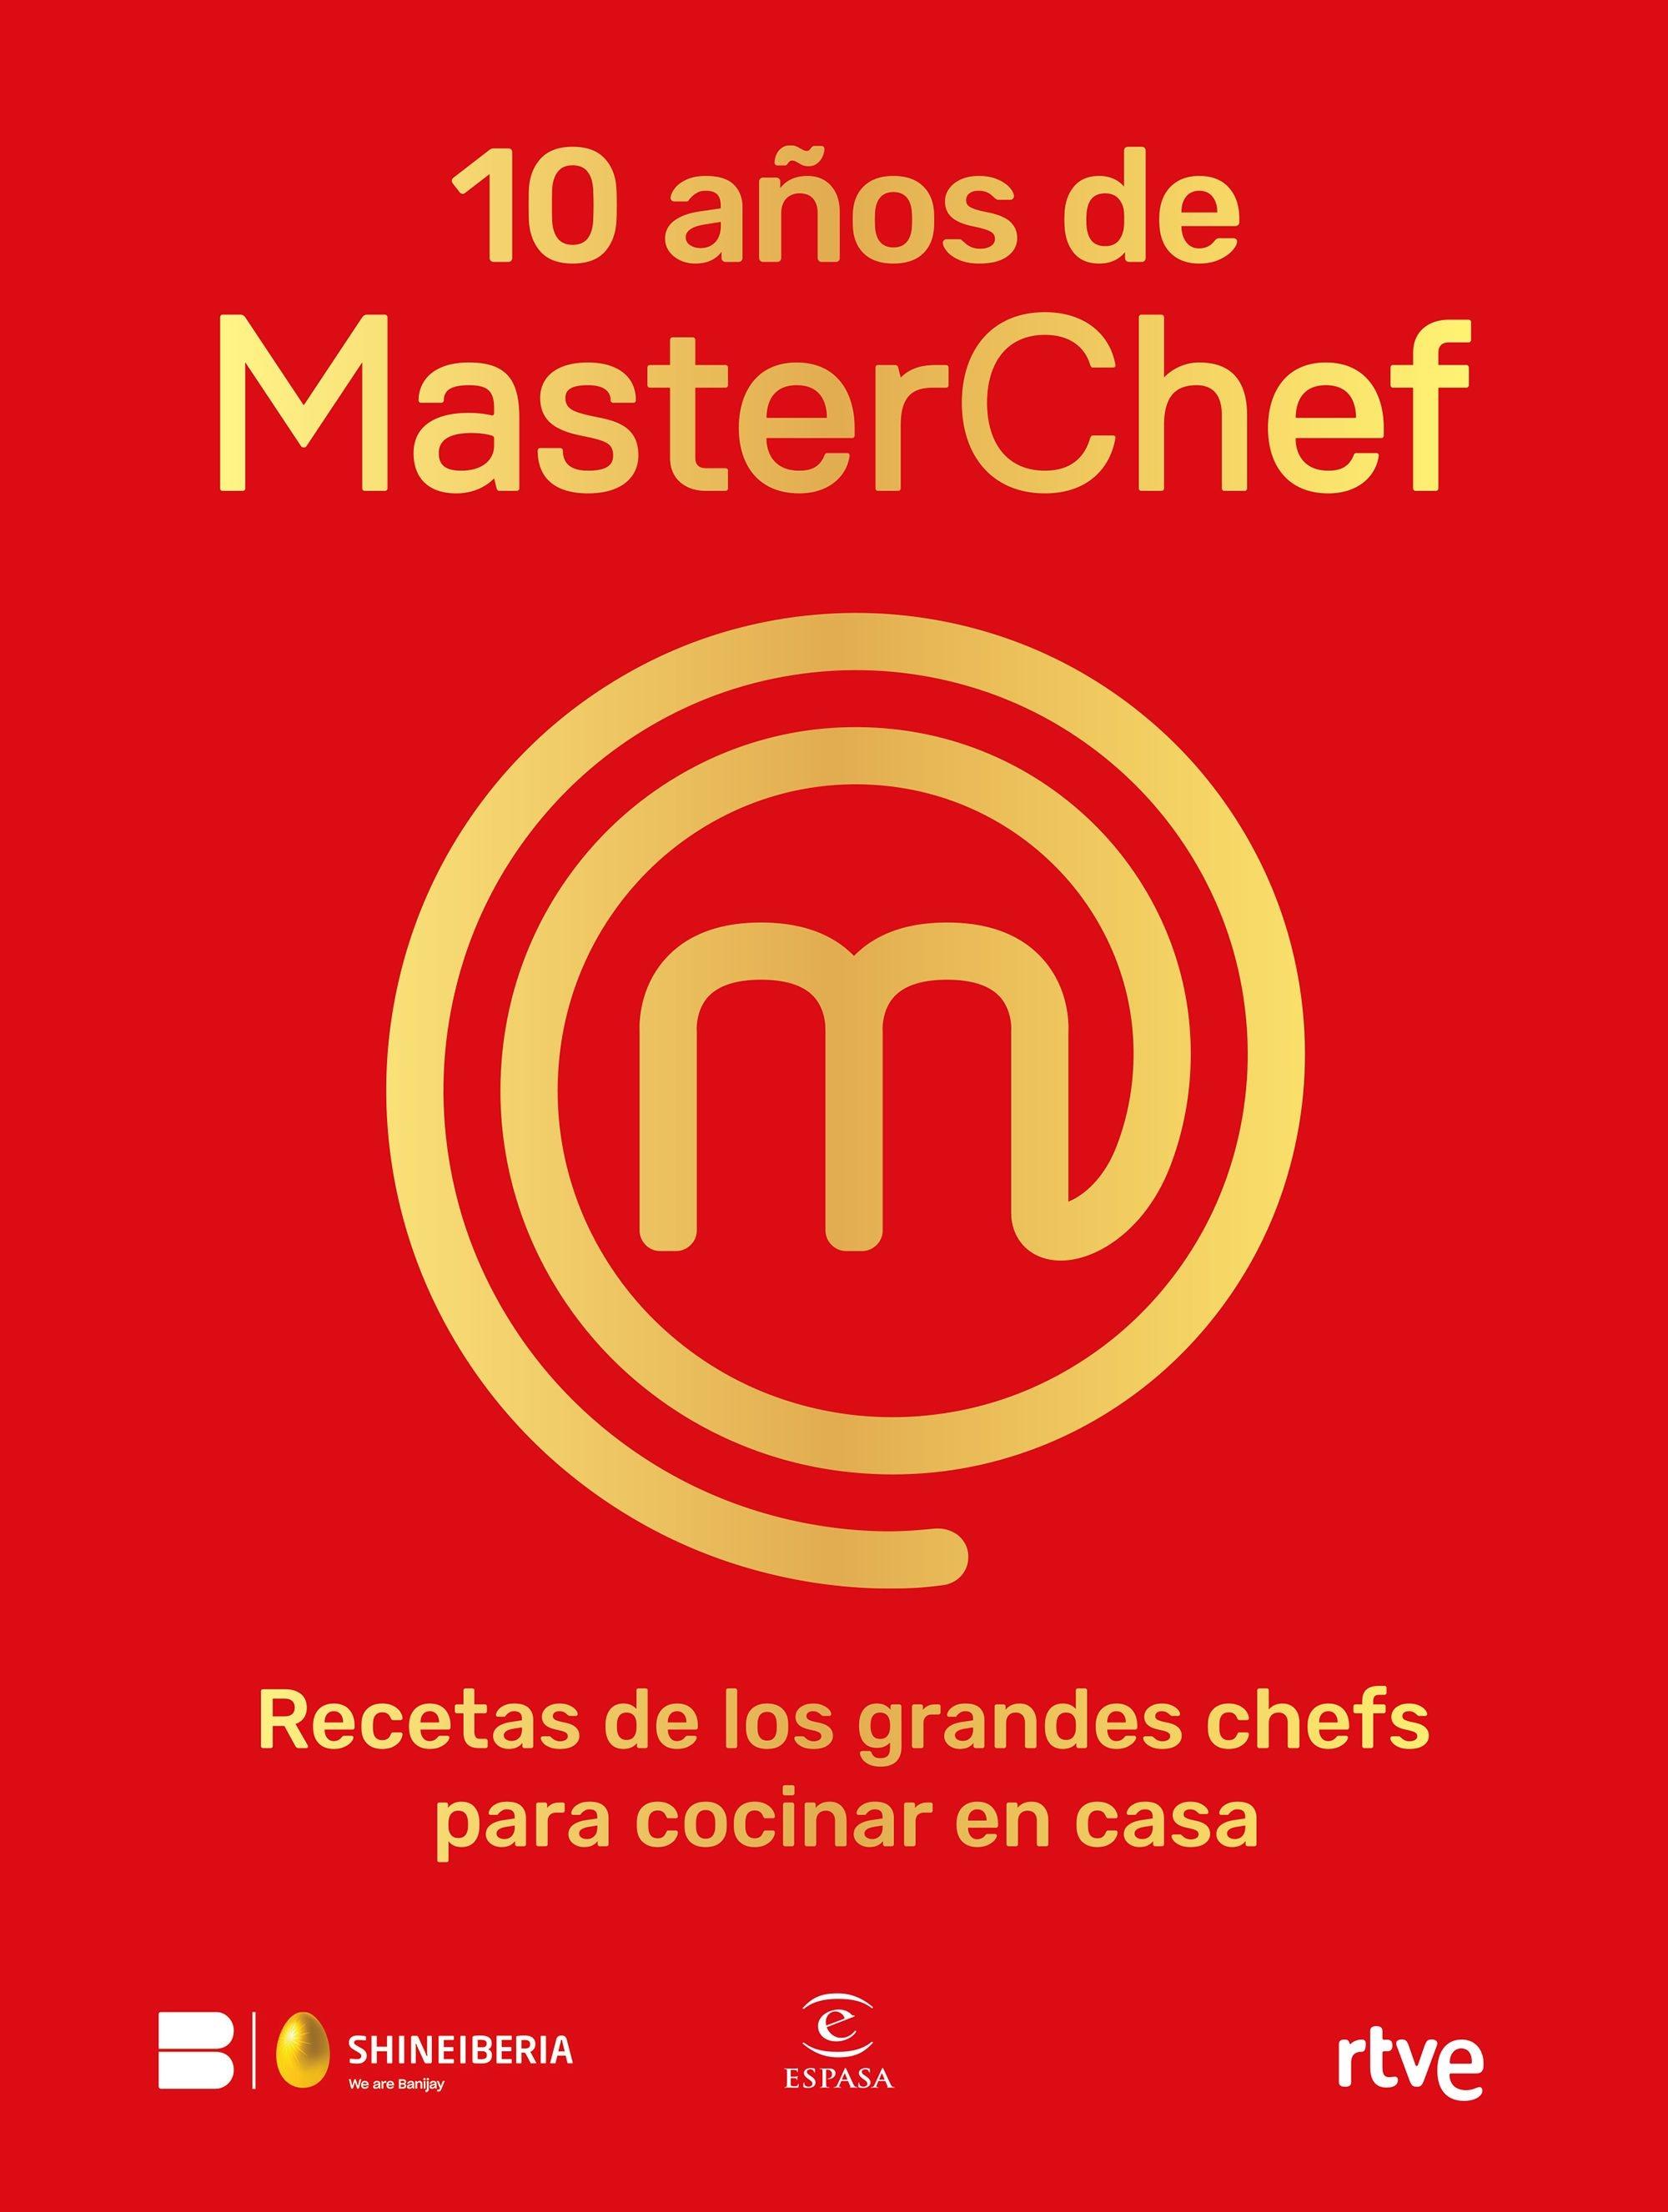 10 años de Masterchef "Recetas de los grandes chefs para cocinar en casa". 